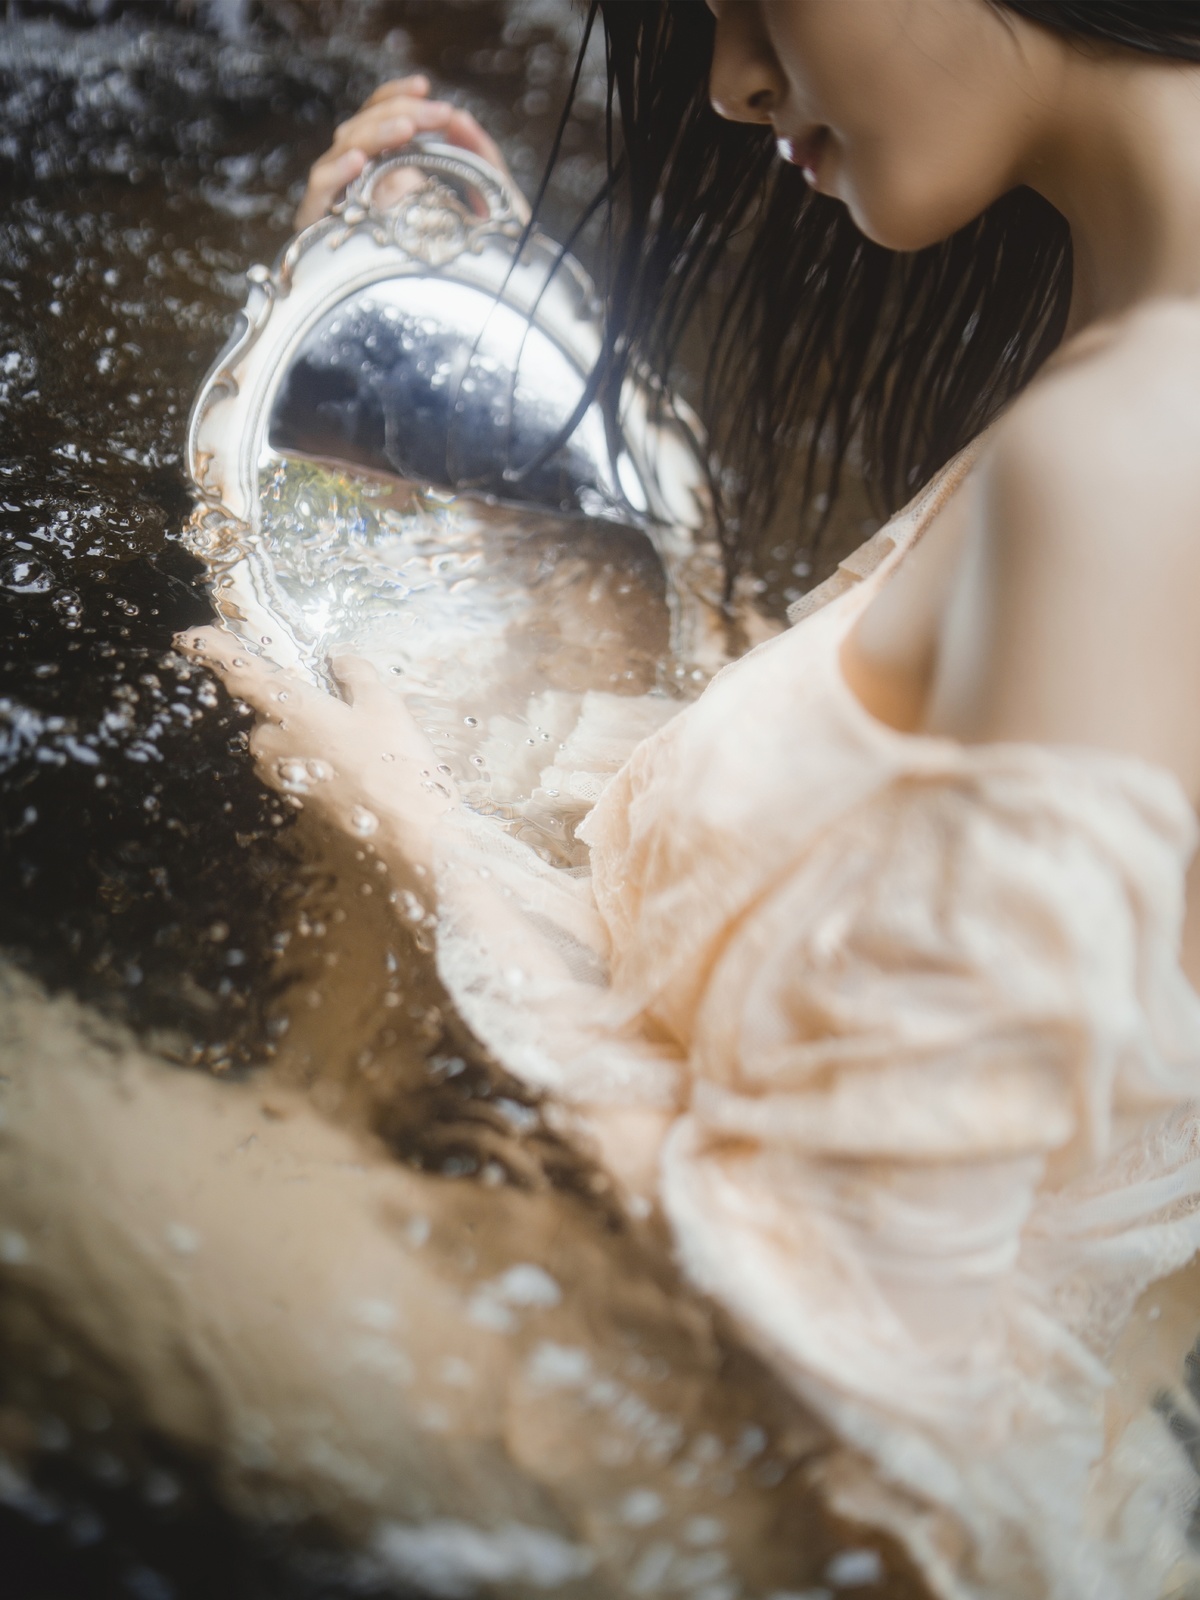 一个穿银色连衣裙的年轻女子往自己身上倒水。